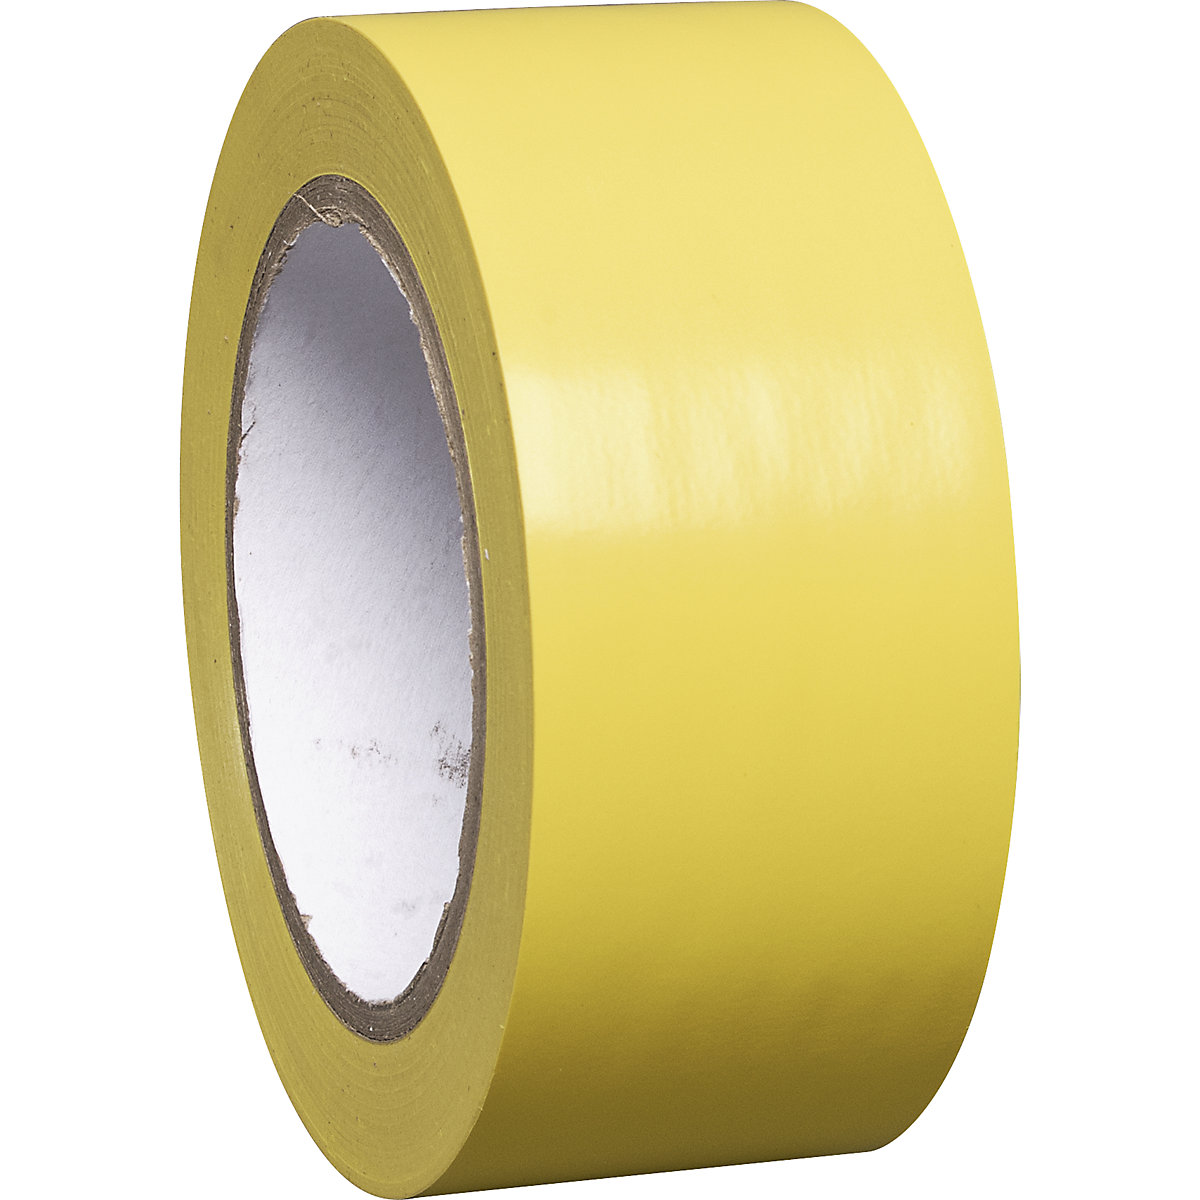 Bodenmarkierungsband aus Vinyl, einfarbig, Breite 50 mm, gelb, VE 8 Rollen-6